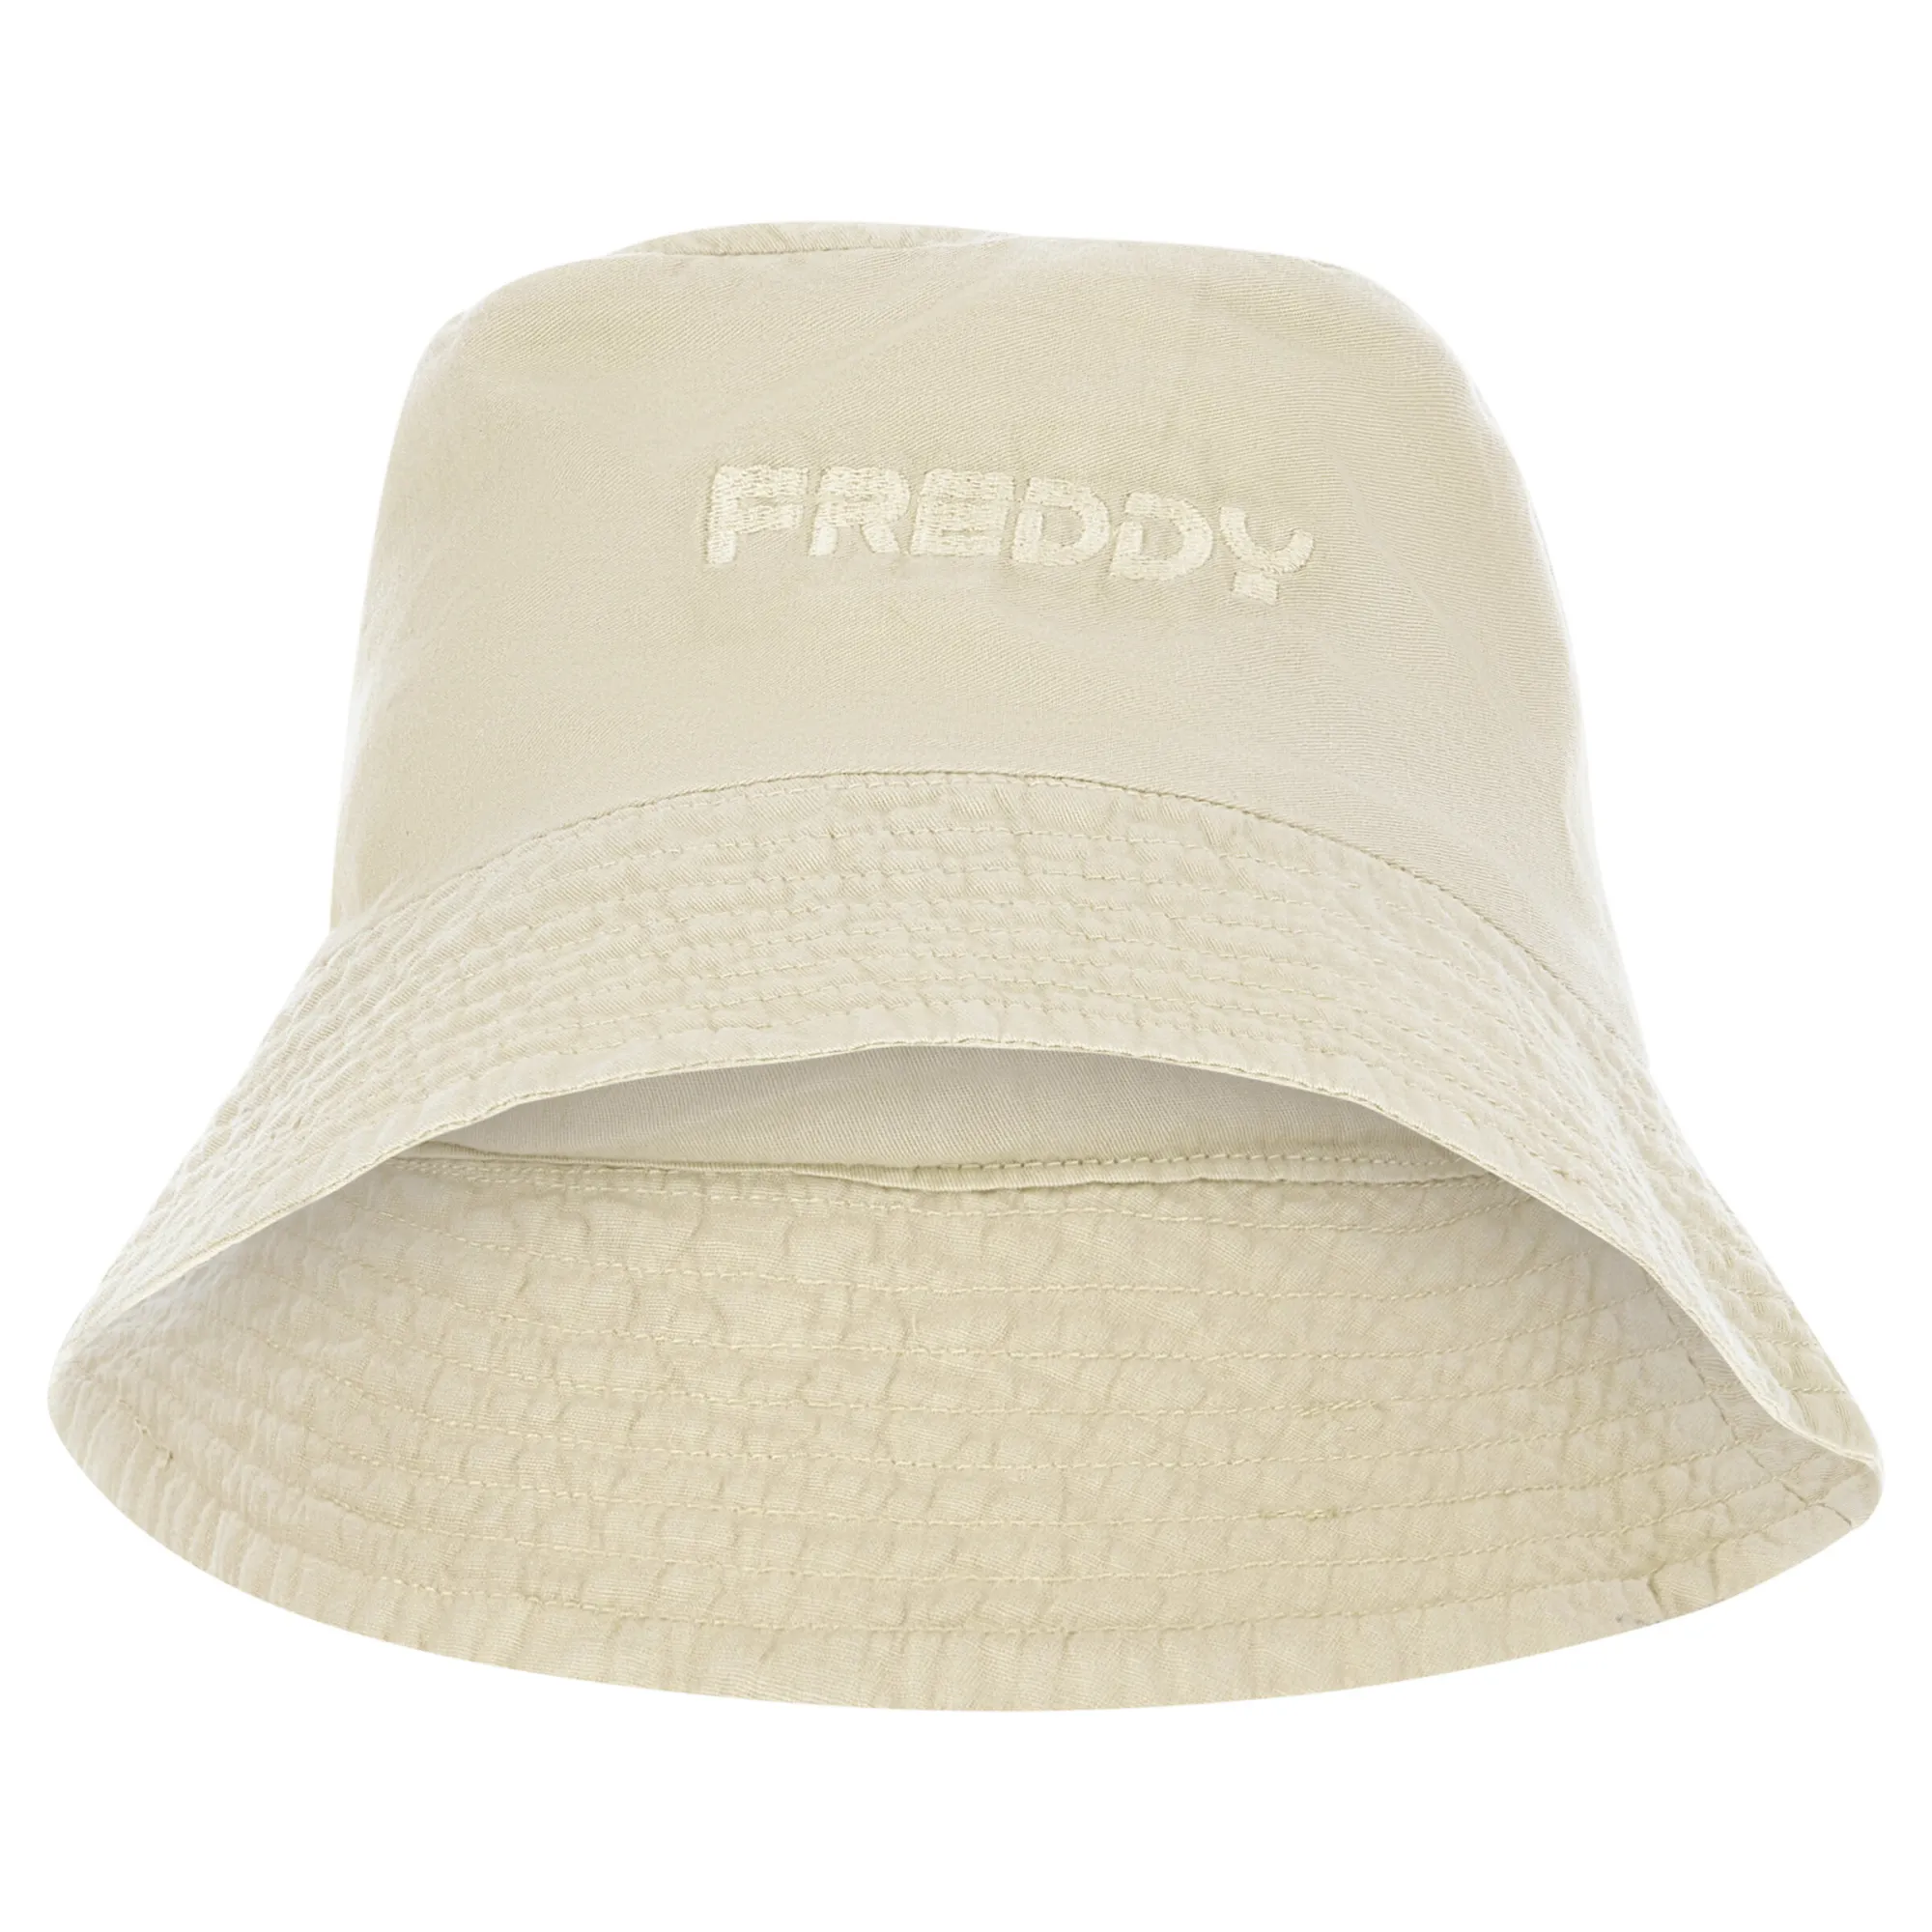 Freddy Czapka Bucket Hat (Czapka rybaczka) - Beżowy